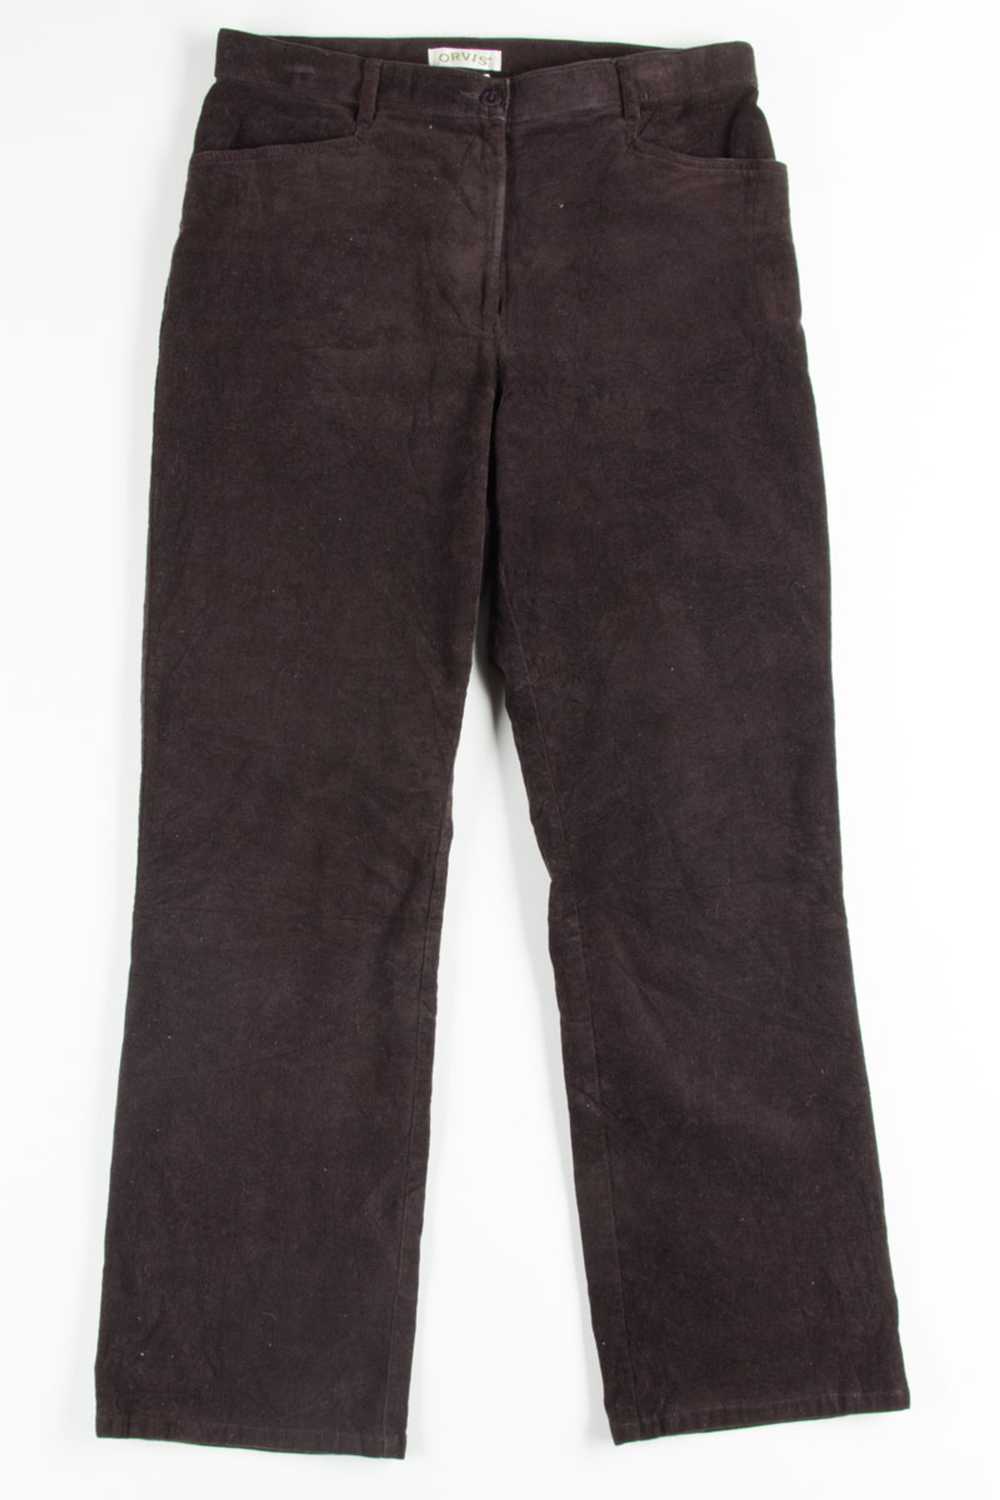 Dark Brown Orvis Corduroy Pants (sz. 8) - image 2